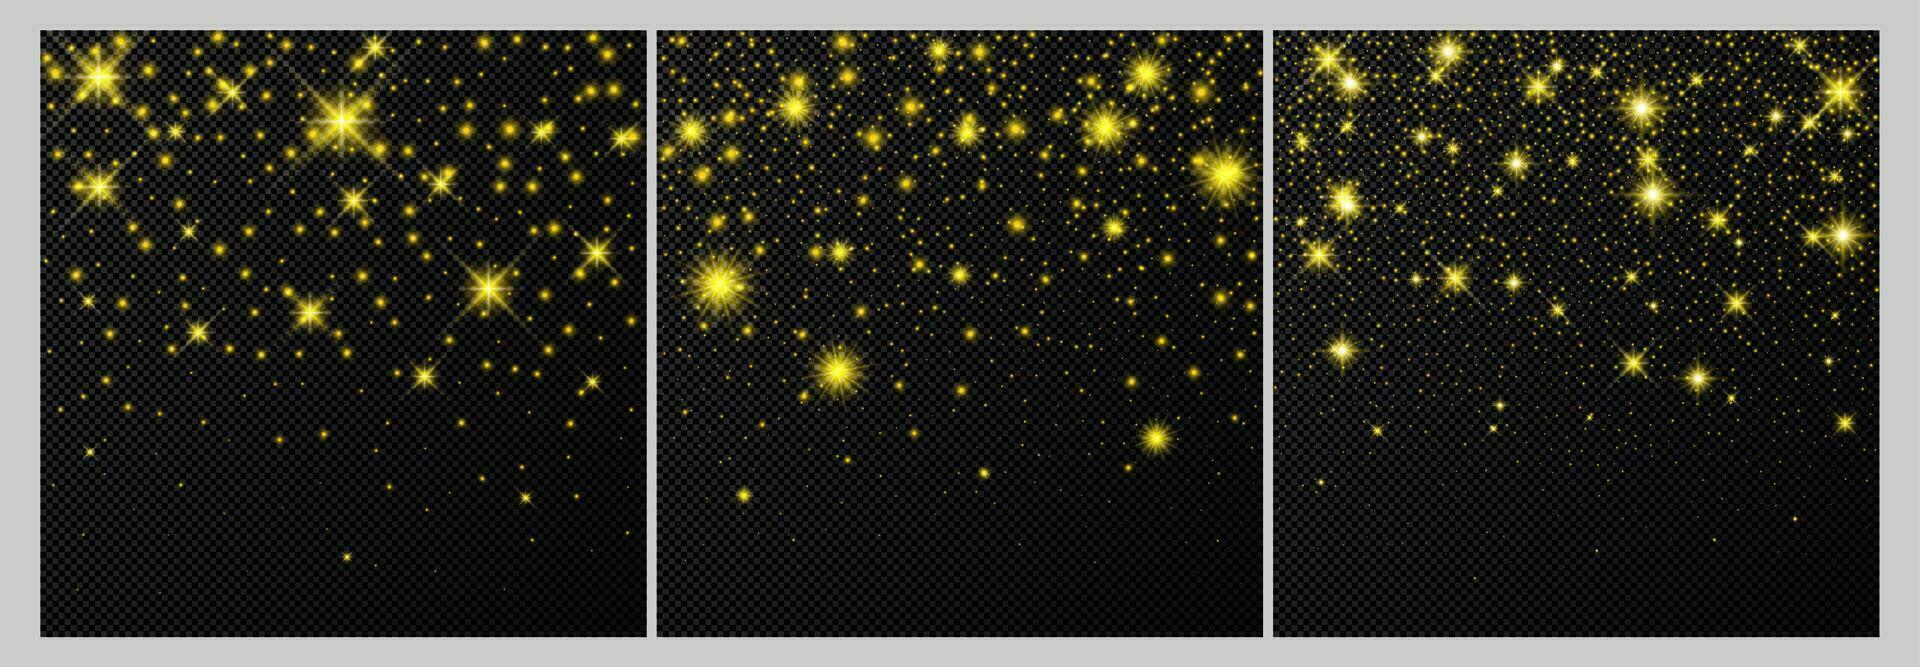 uppsättning av tre guld bakgrunder med stjärnor och damm pärlar isolerat på mörk bakgrund. fest magisk jul lysande ljus effekt. vektor illustration.